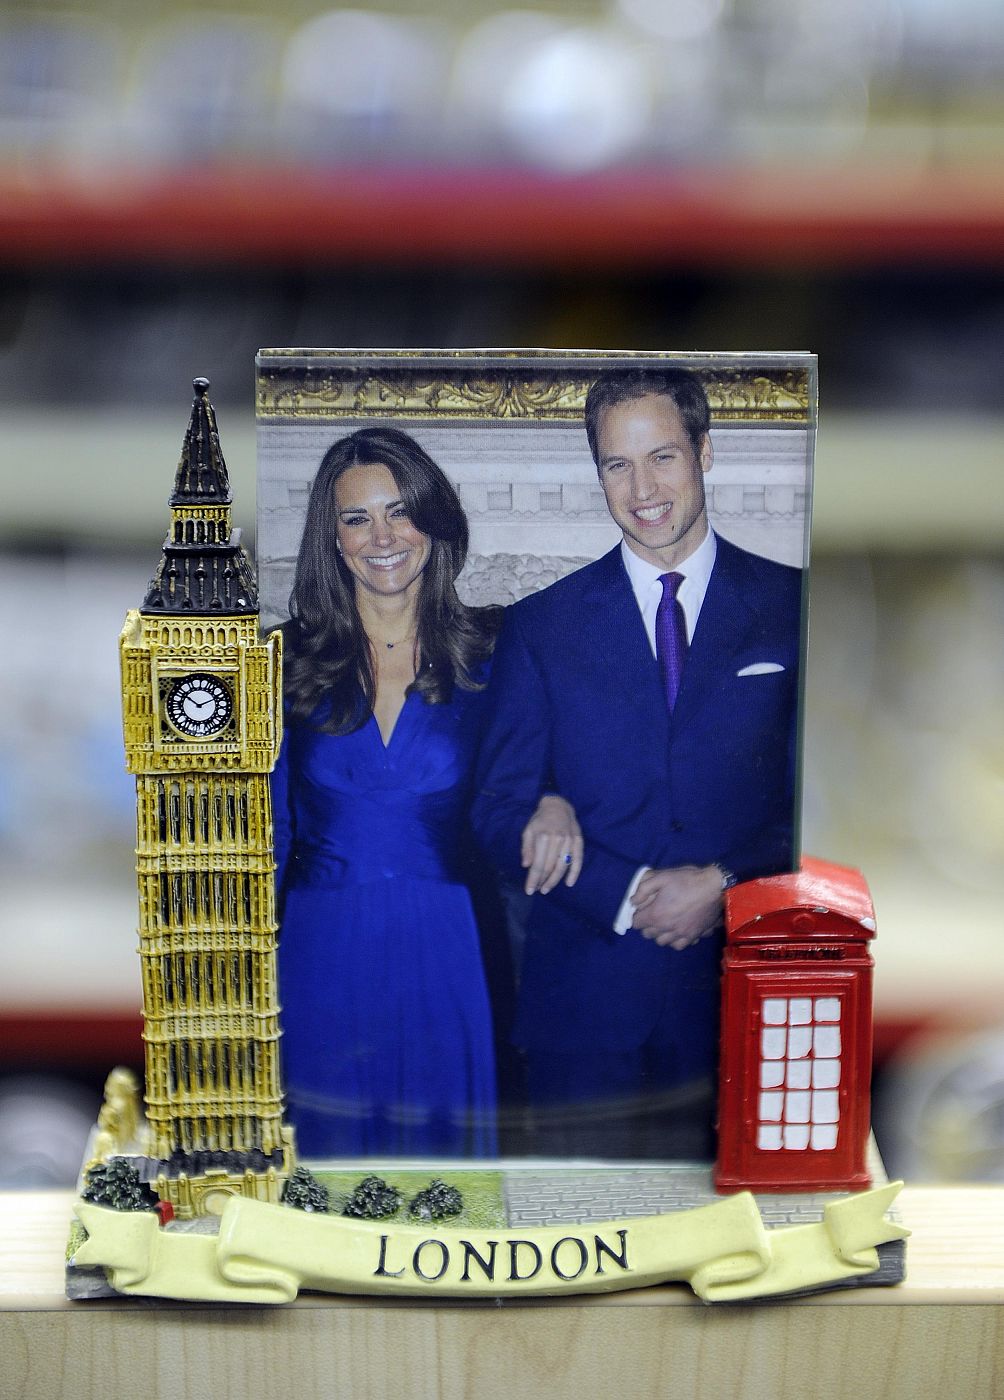 Marco con una foto del príncipe Guillermo de Inglaterra y su novia Kate Middleton que se vende como recuerdo en una tienda de Londres.